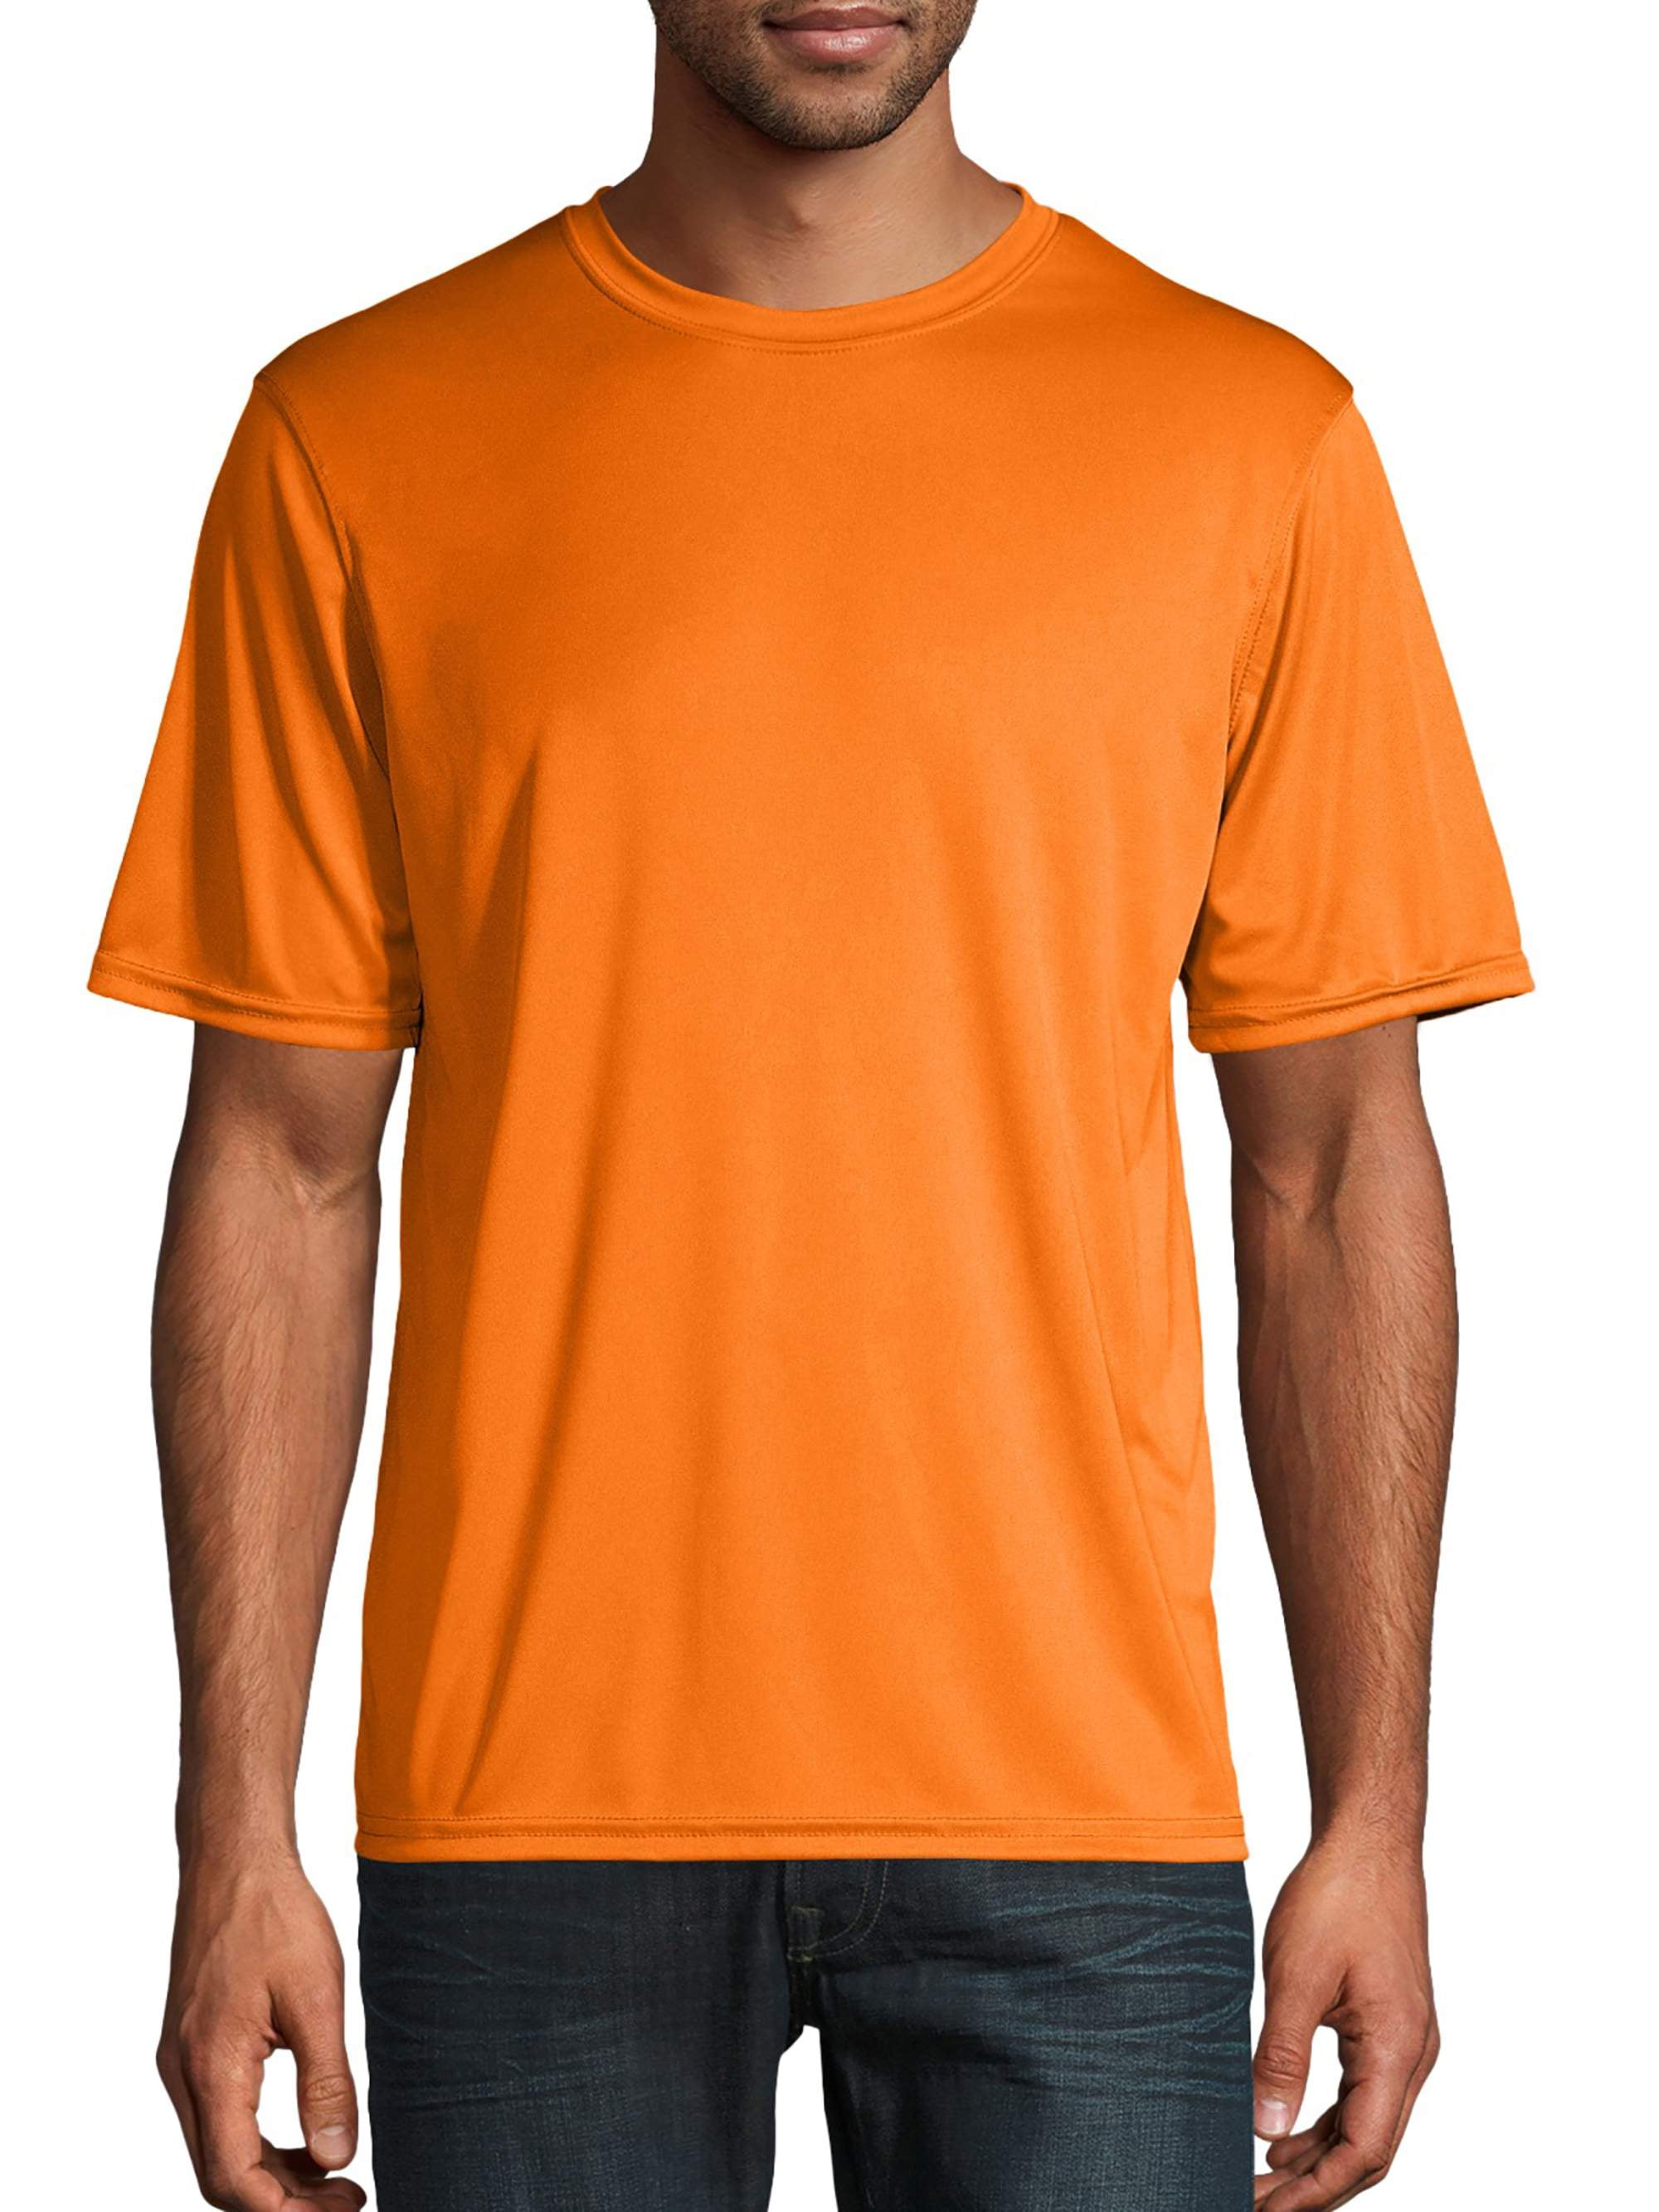 Belofte knal pijn Champion Men's Long Sleeve Performance T-Shirt, up to Size 3XL - Walmart.com